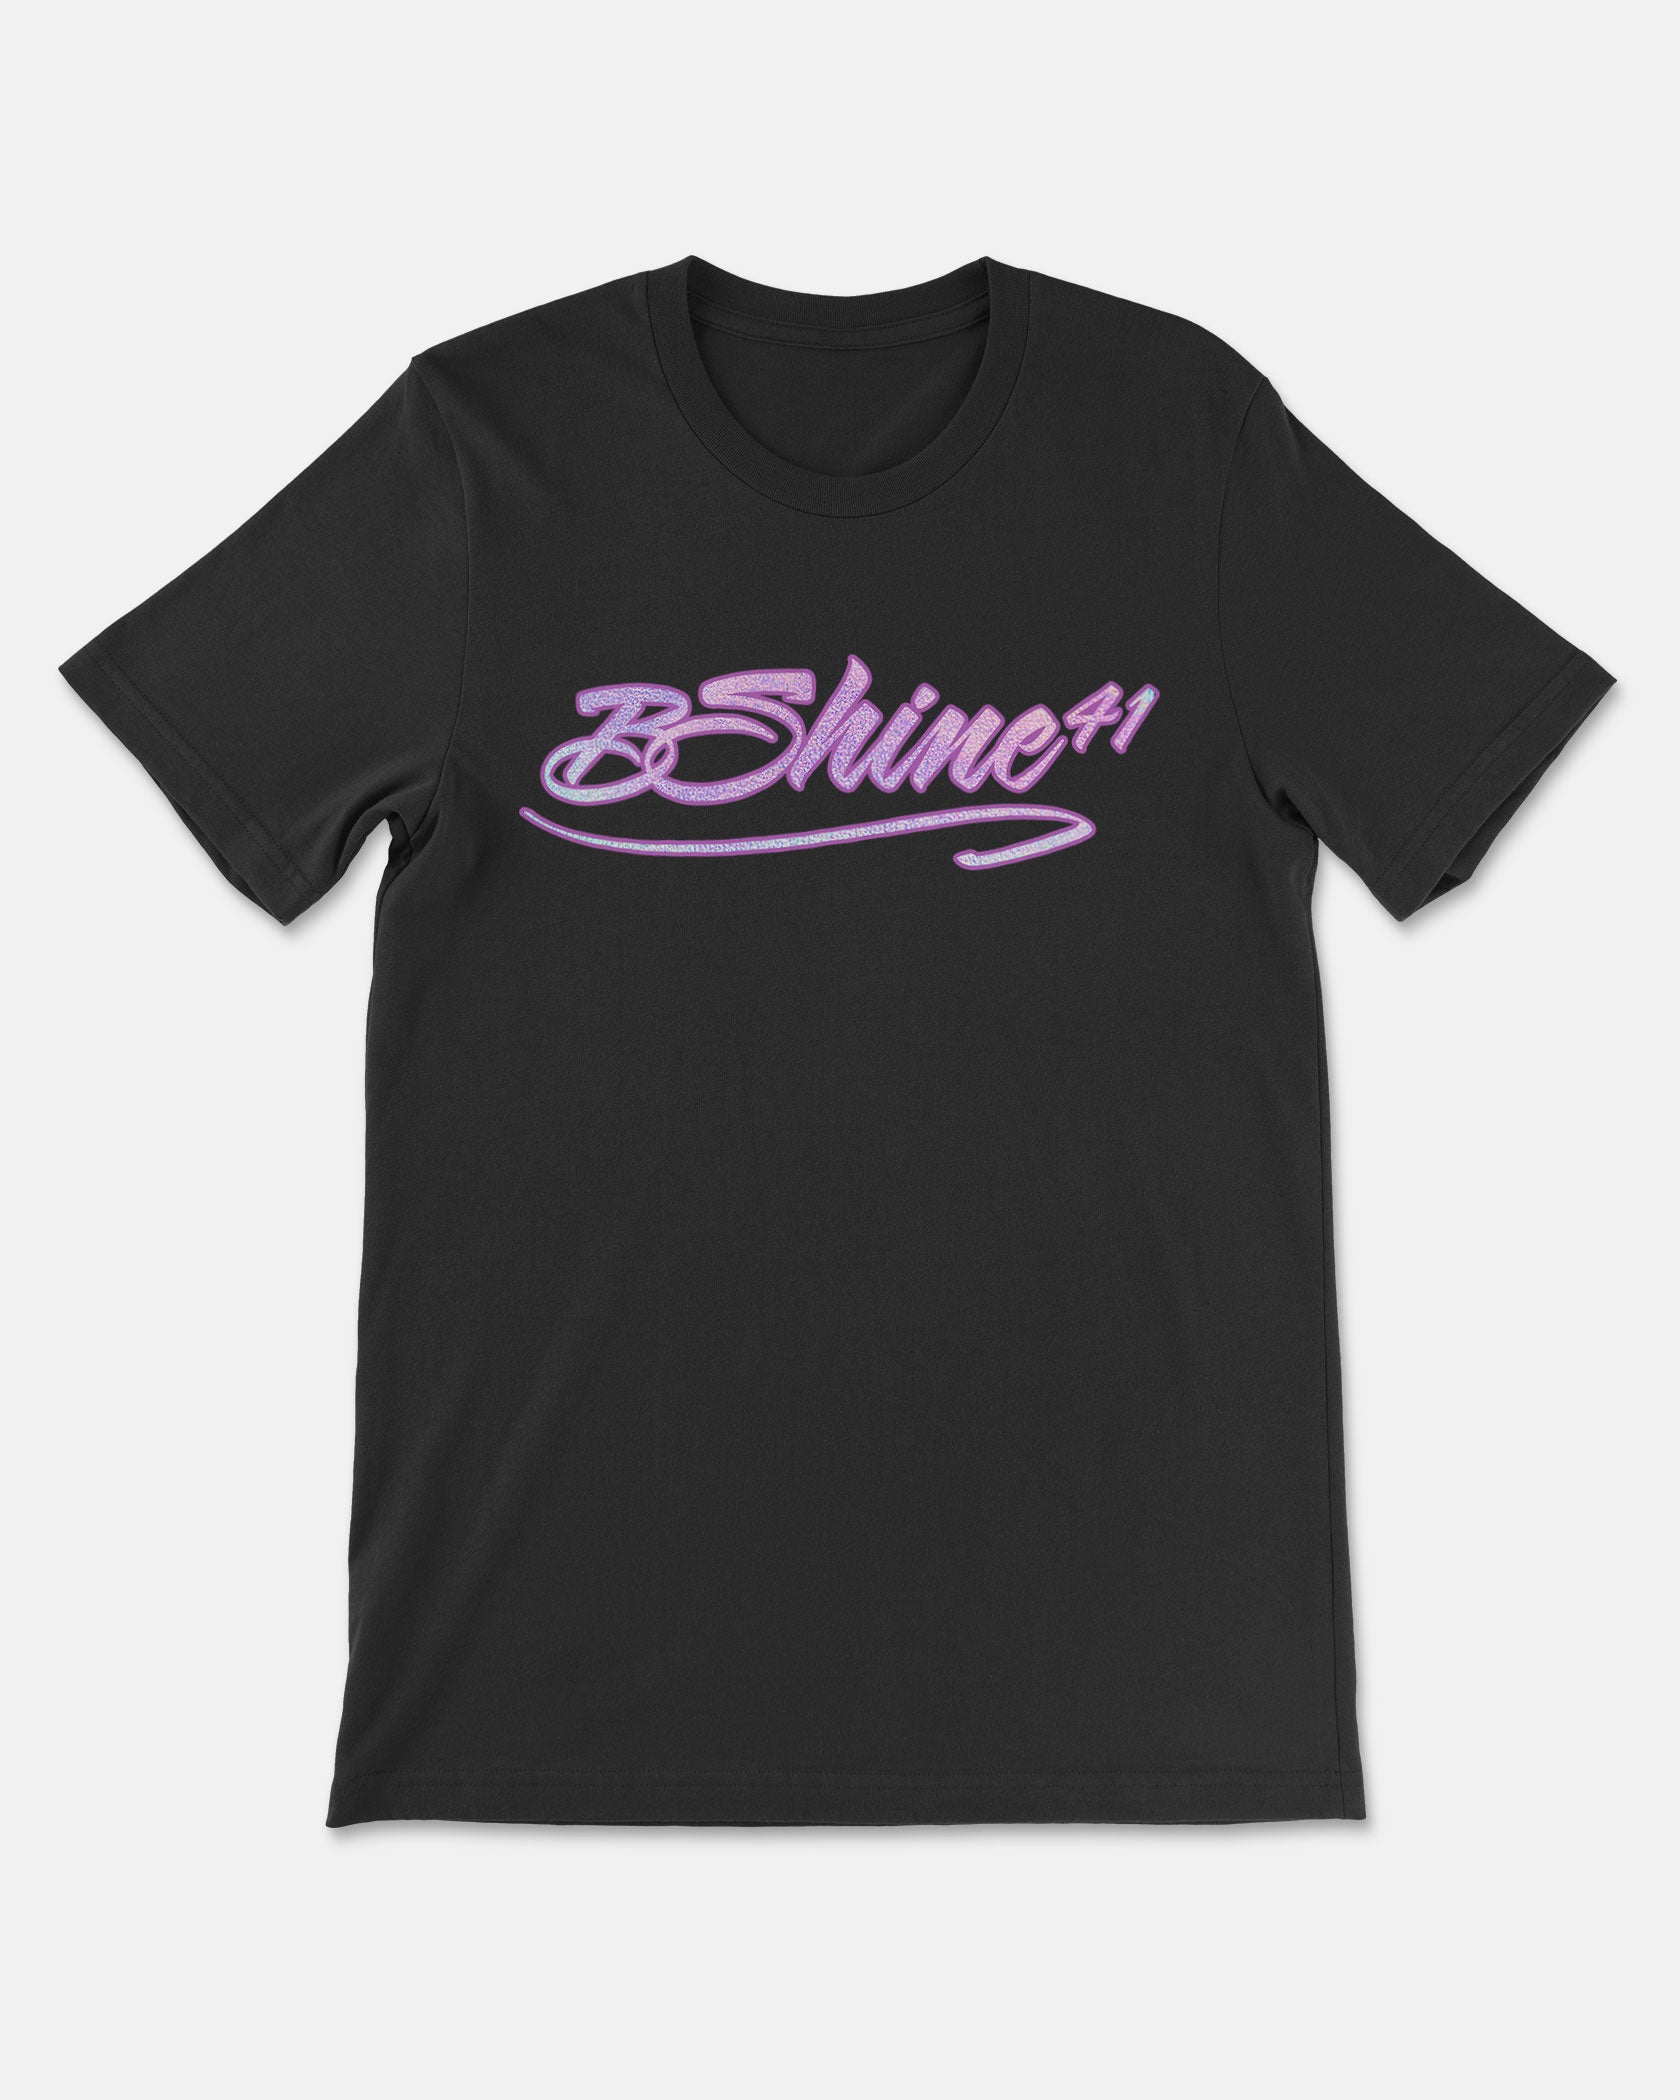 Bria Shine Shirt 005